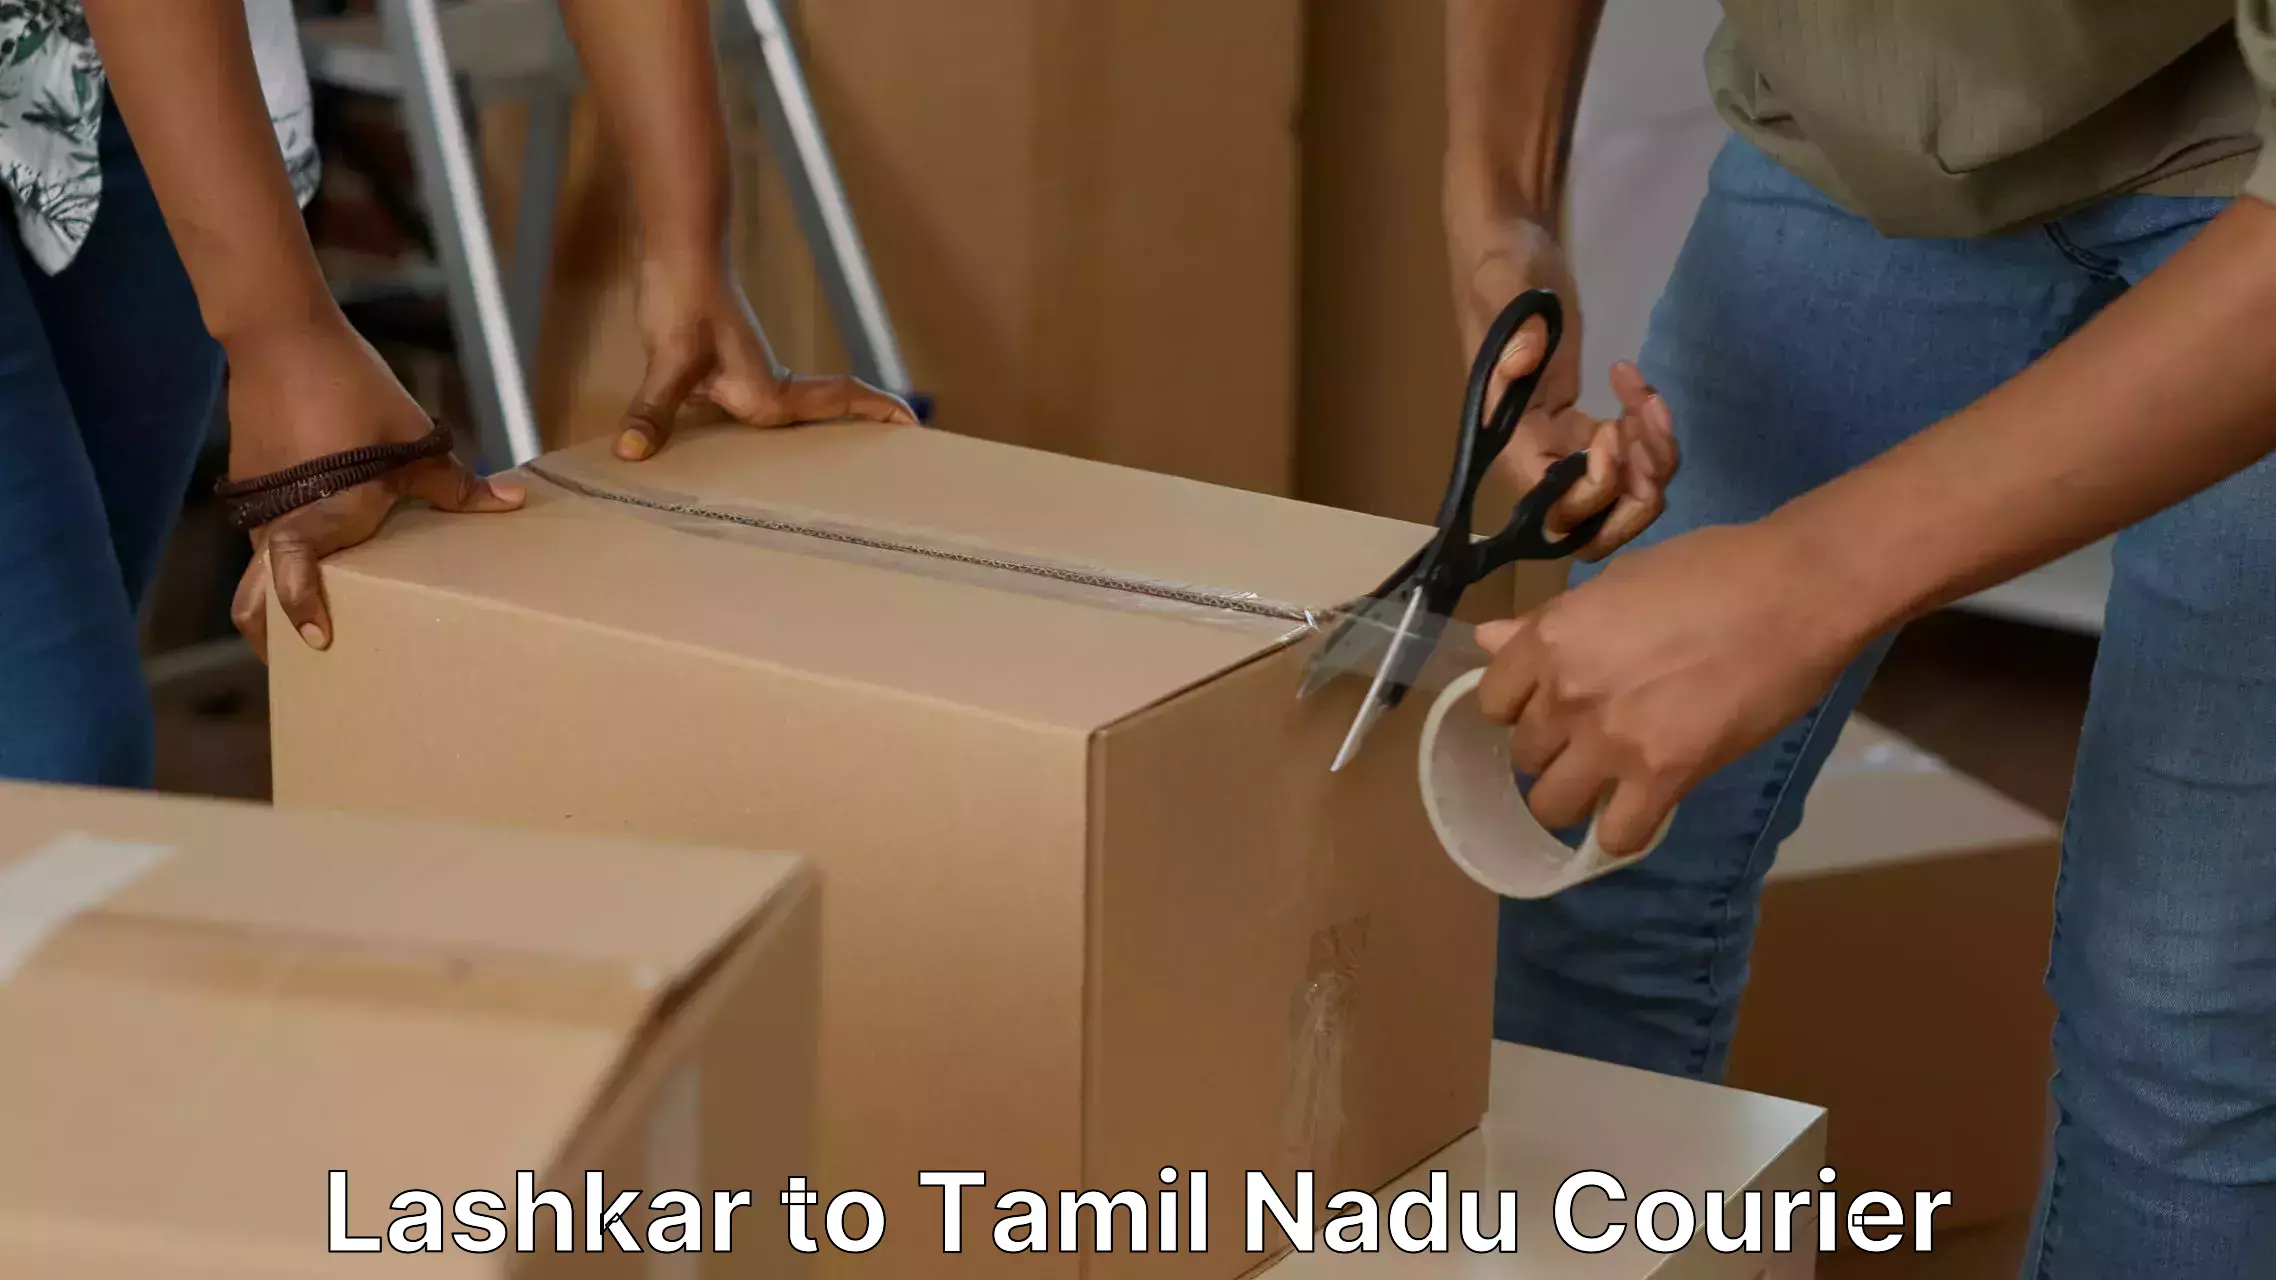 Furniture transport professionals Lashkar to Tamil Nadu